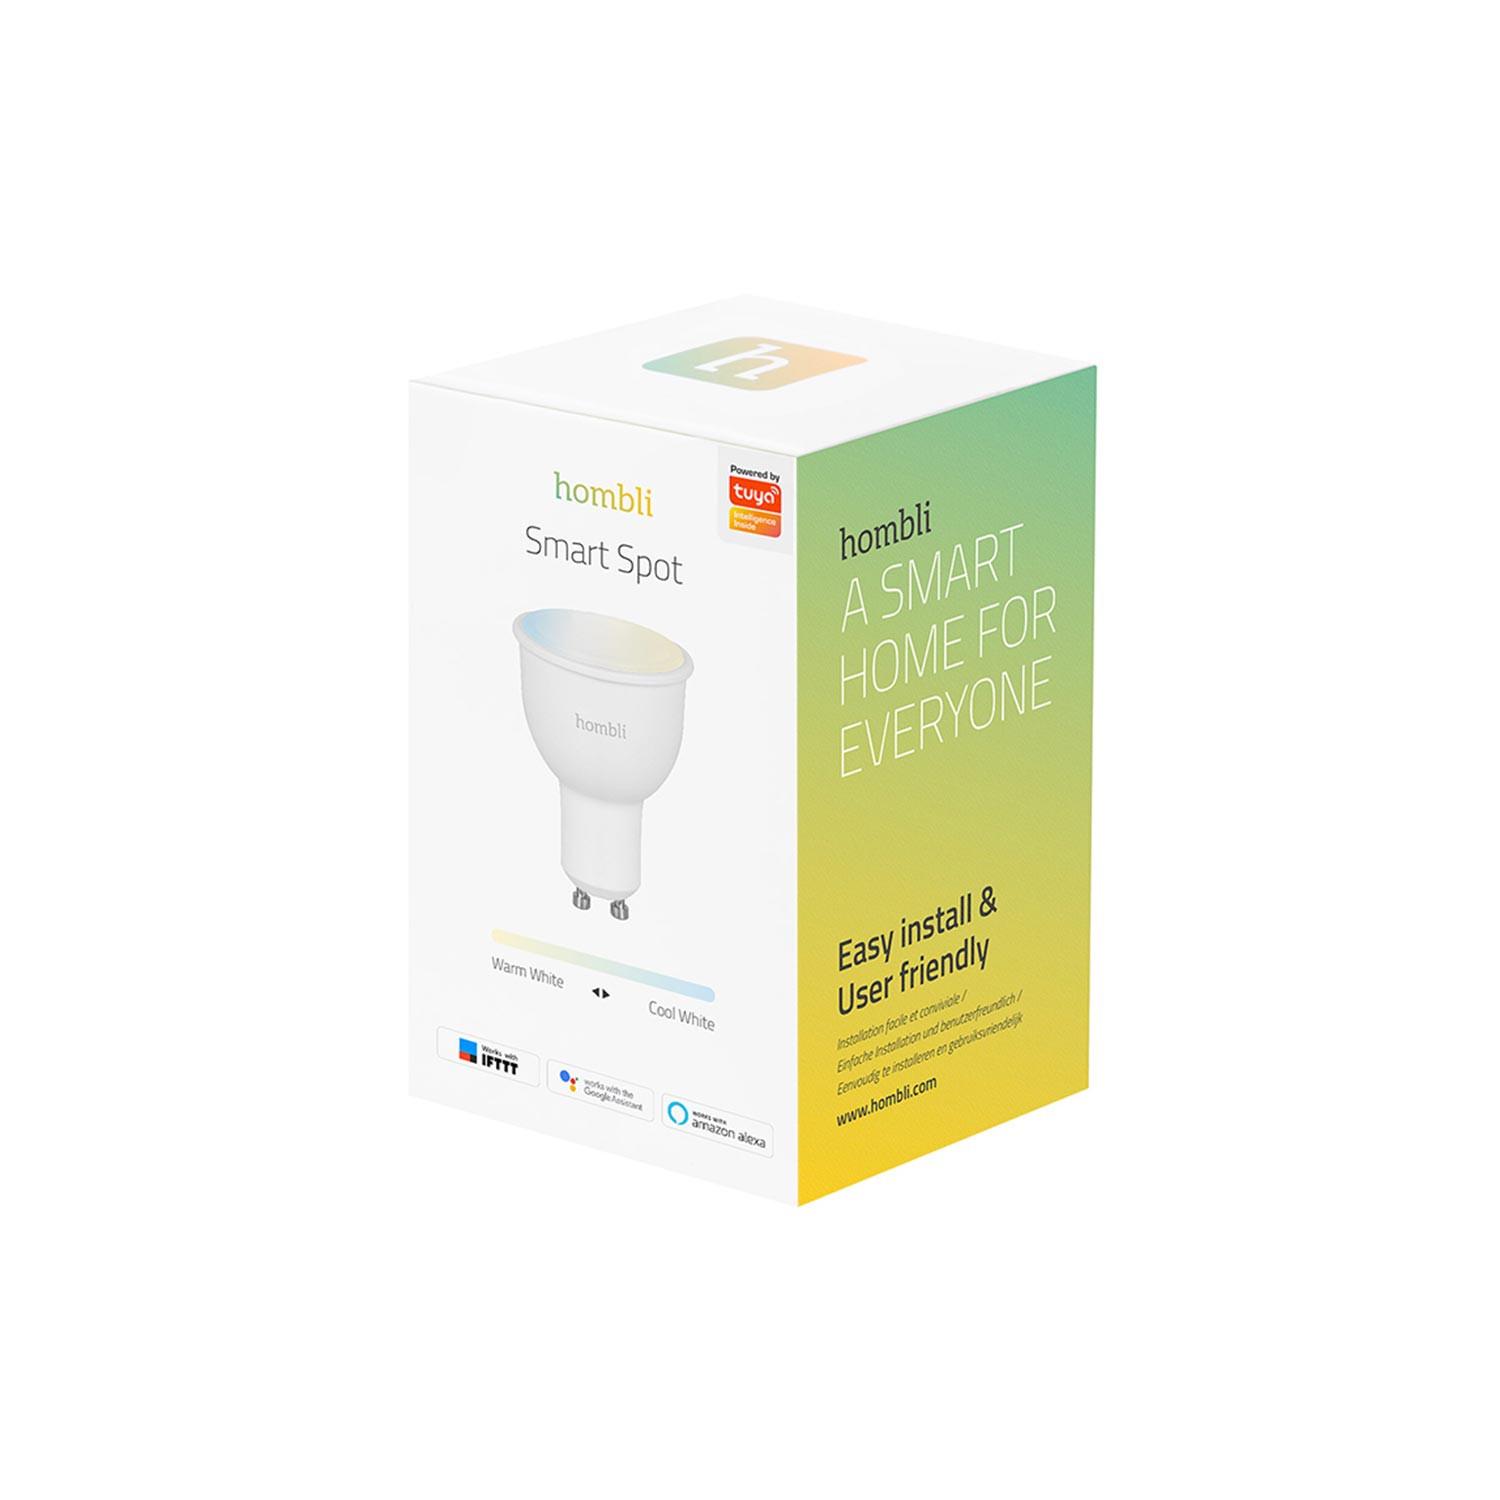 Hombli Smart Spot GU10 White-Lampe 3er-Set + gratis Smart Spot GU10 White 3er-Set - Verpackung